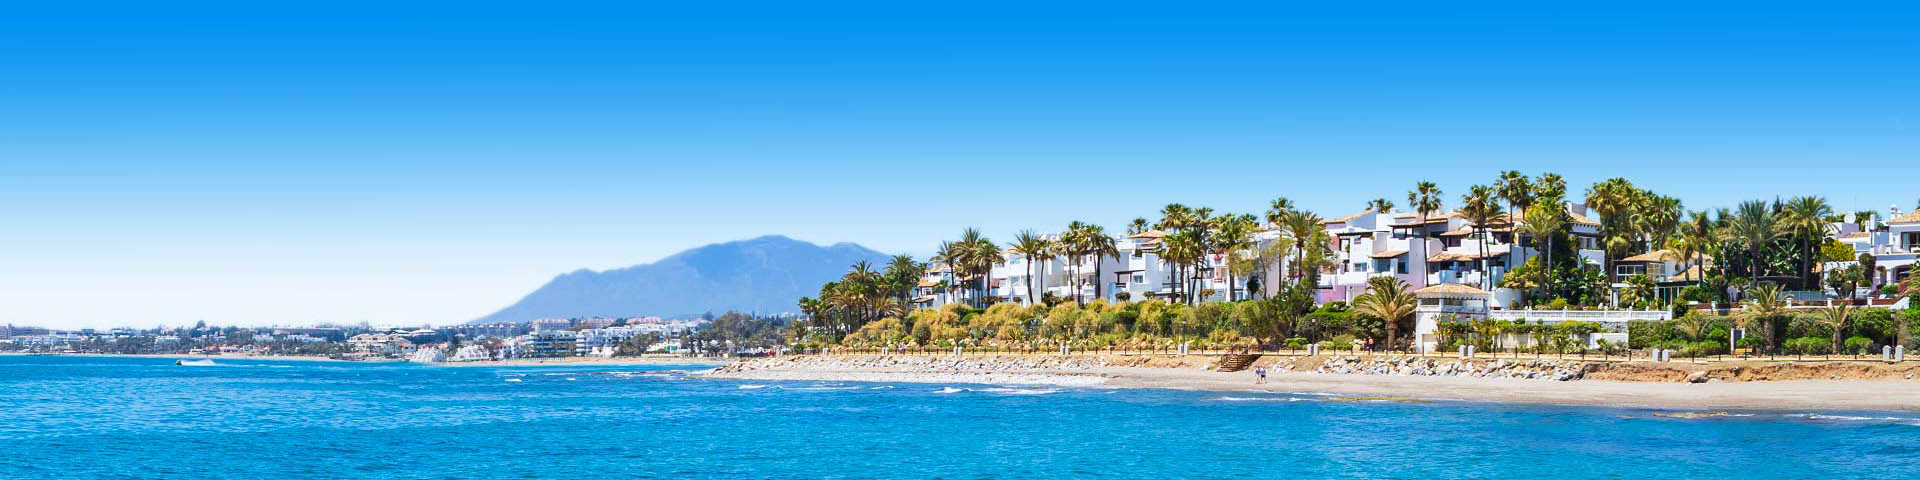 Uitzicht op het mooie strand van Marbella met ligbedjes en parasols